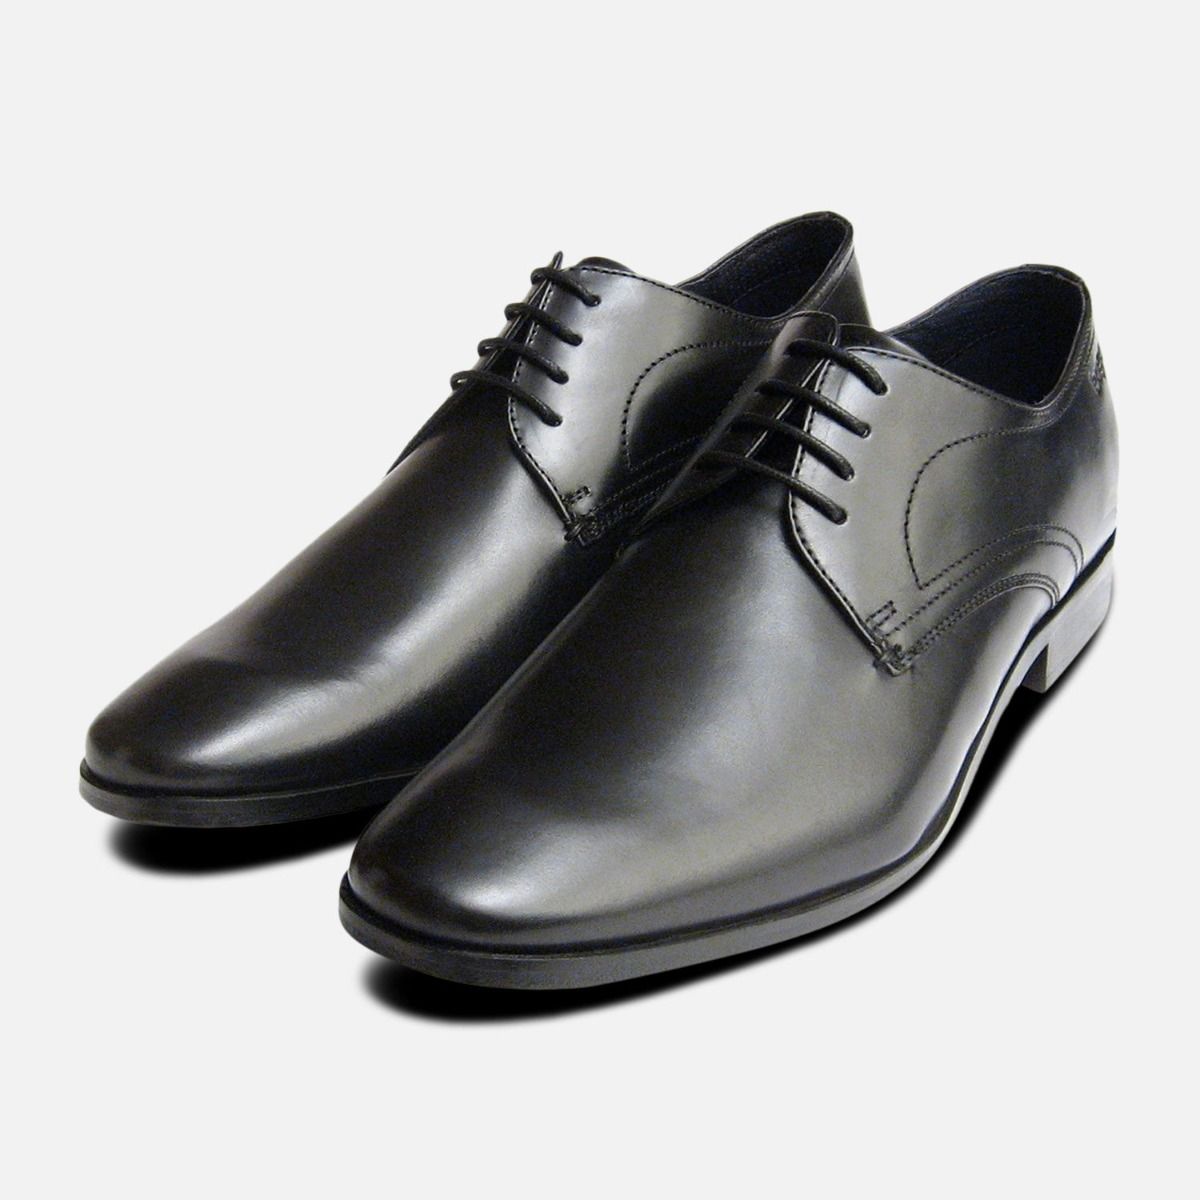 bugatti shoes company